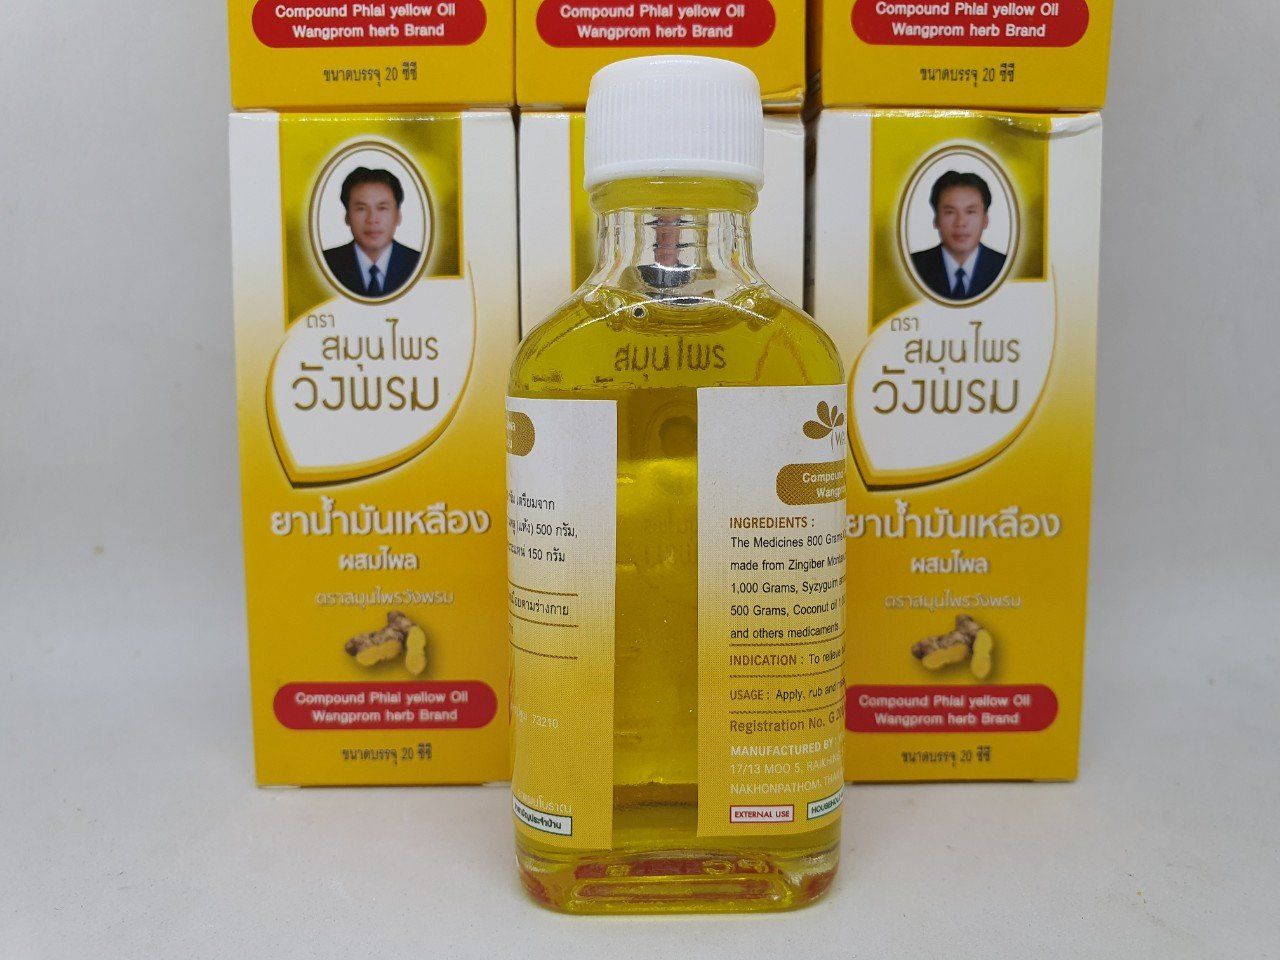  Dầu gió compound phlal yellow oil wangprom herb brand chính hãng thái lan 20 ml 